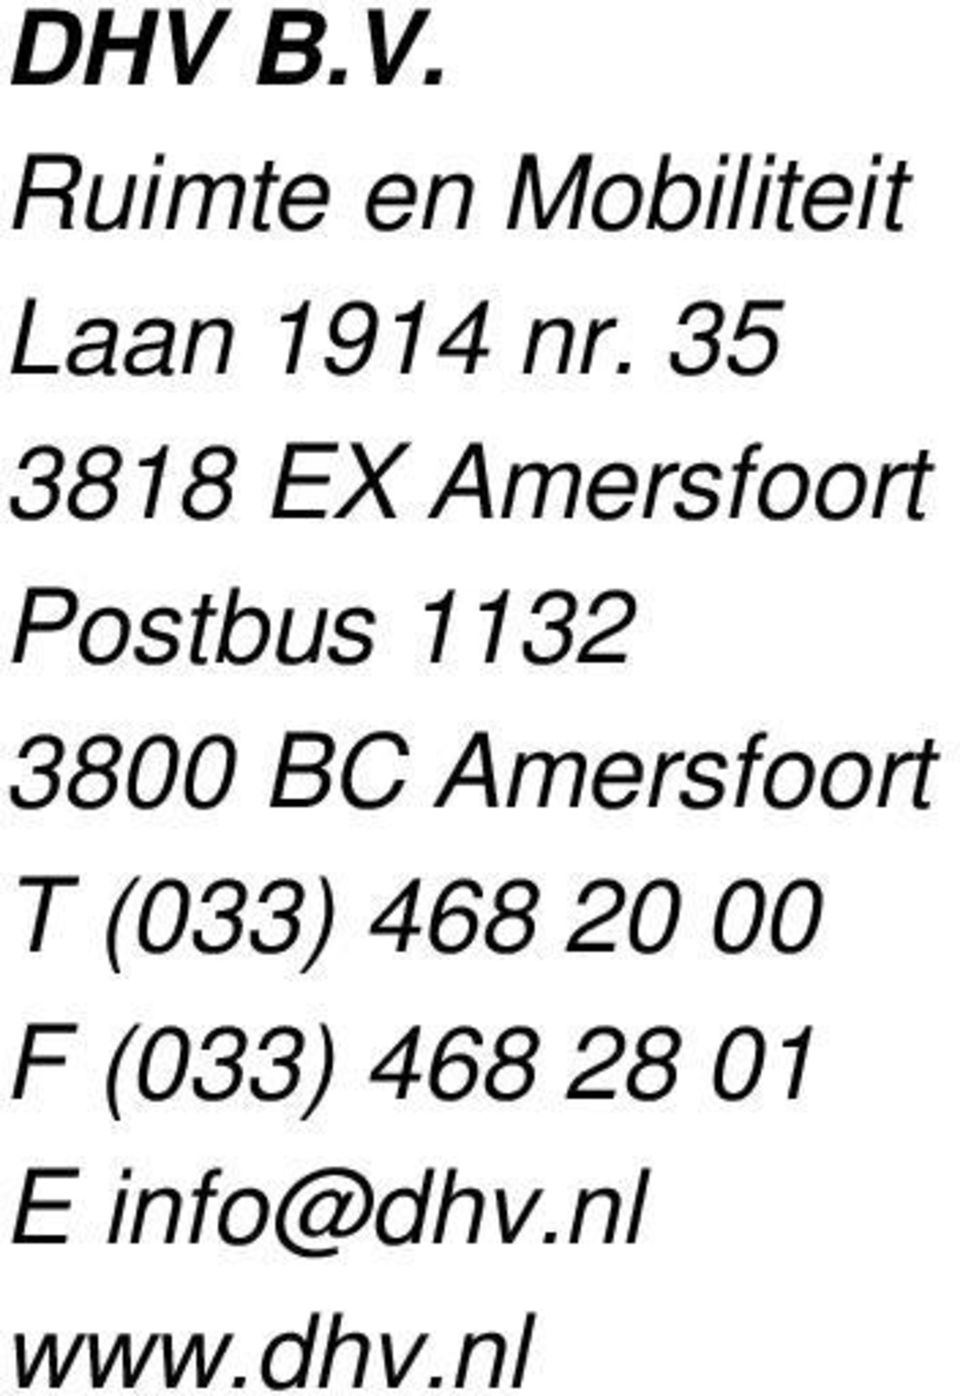 3800 BC Amersfoort T (033) 468 20 00